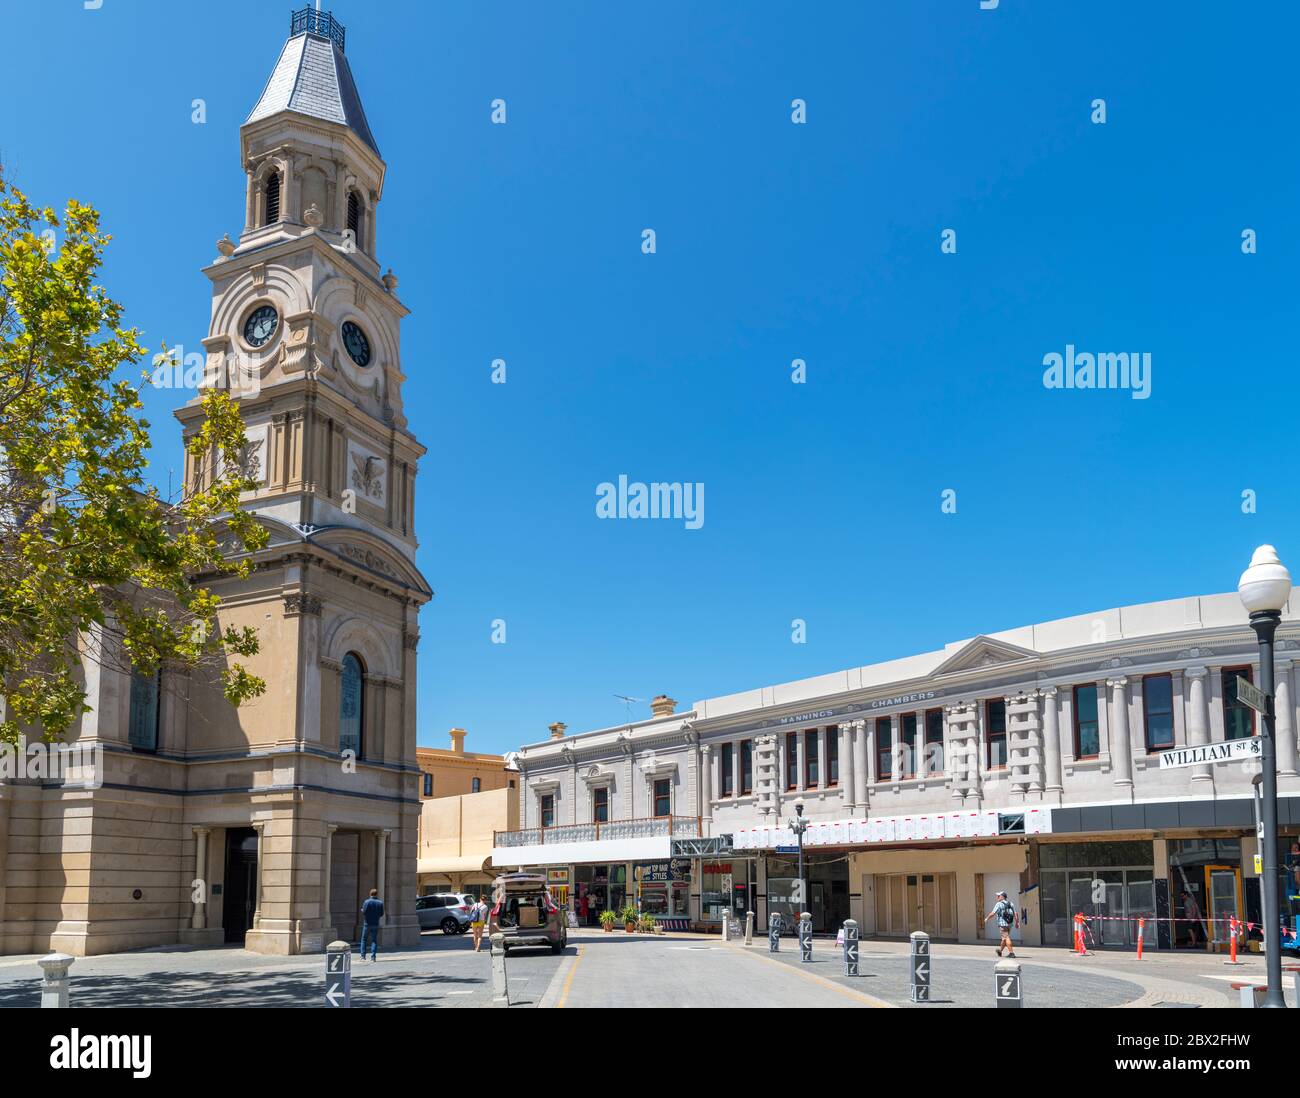 Il municipio di Fremantle su William Street nel quartiere storico, Fremantle, Australia Occidentale, Australia Foto Stock